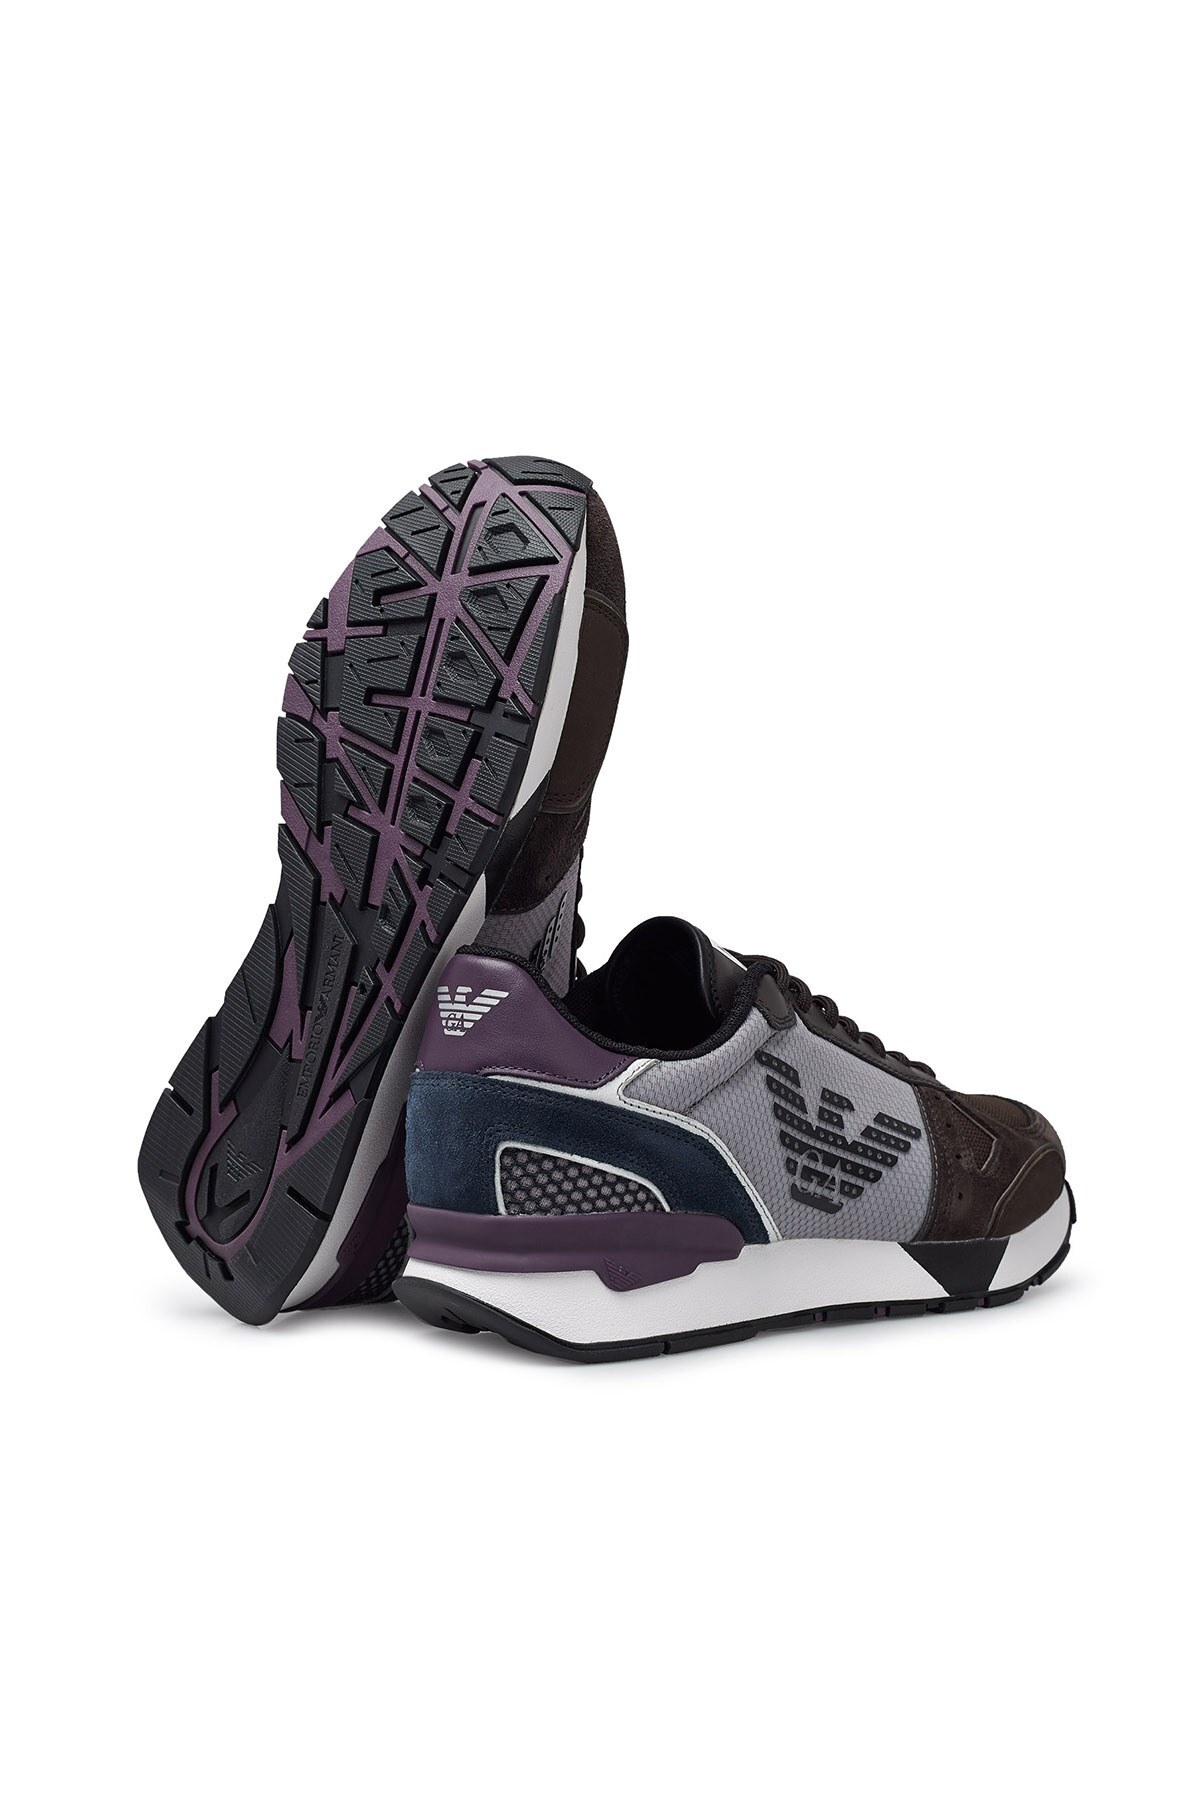 Emporio Armani Sneaker Erkek Ayakkabı X4X289 XM499 N022 KAHVE-GRİ